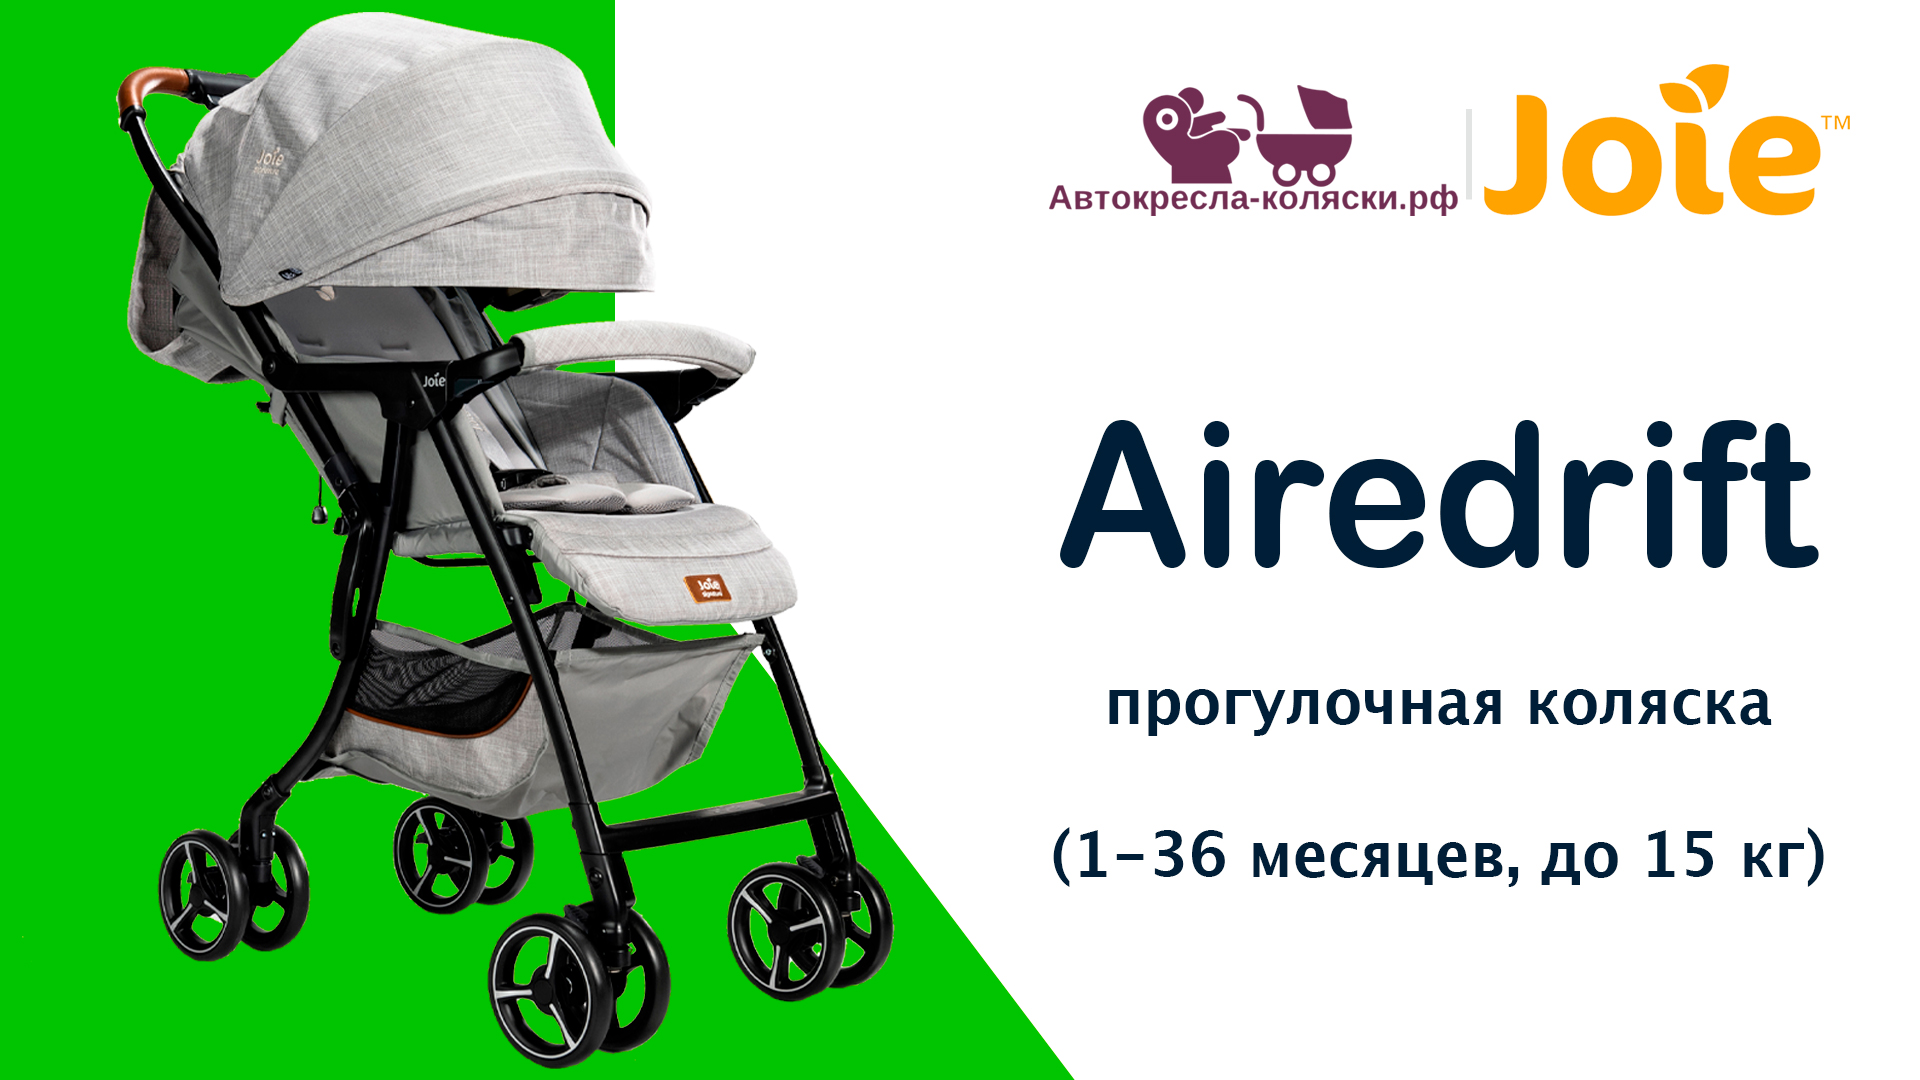 Joie Airedrift™  |  ОБЗОР суперлегкой прогулочной коляски для детей от 1 месяца до 3 лет (до 15 кг).